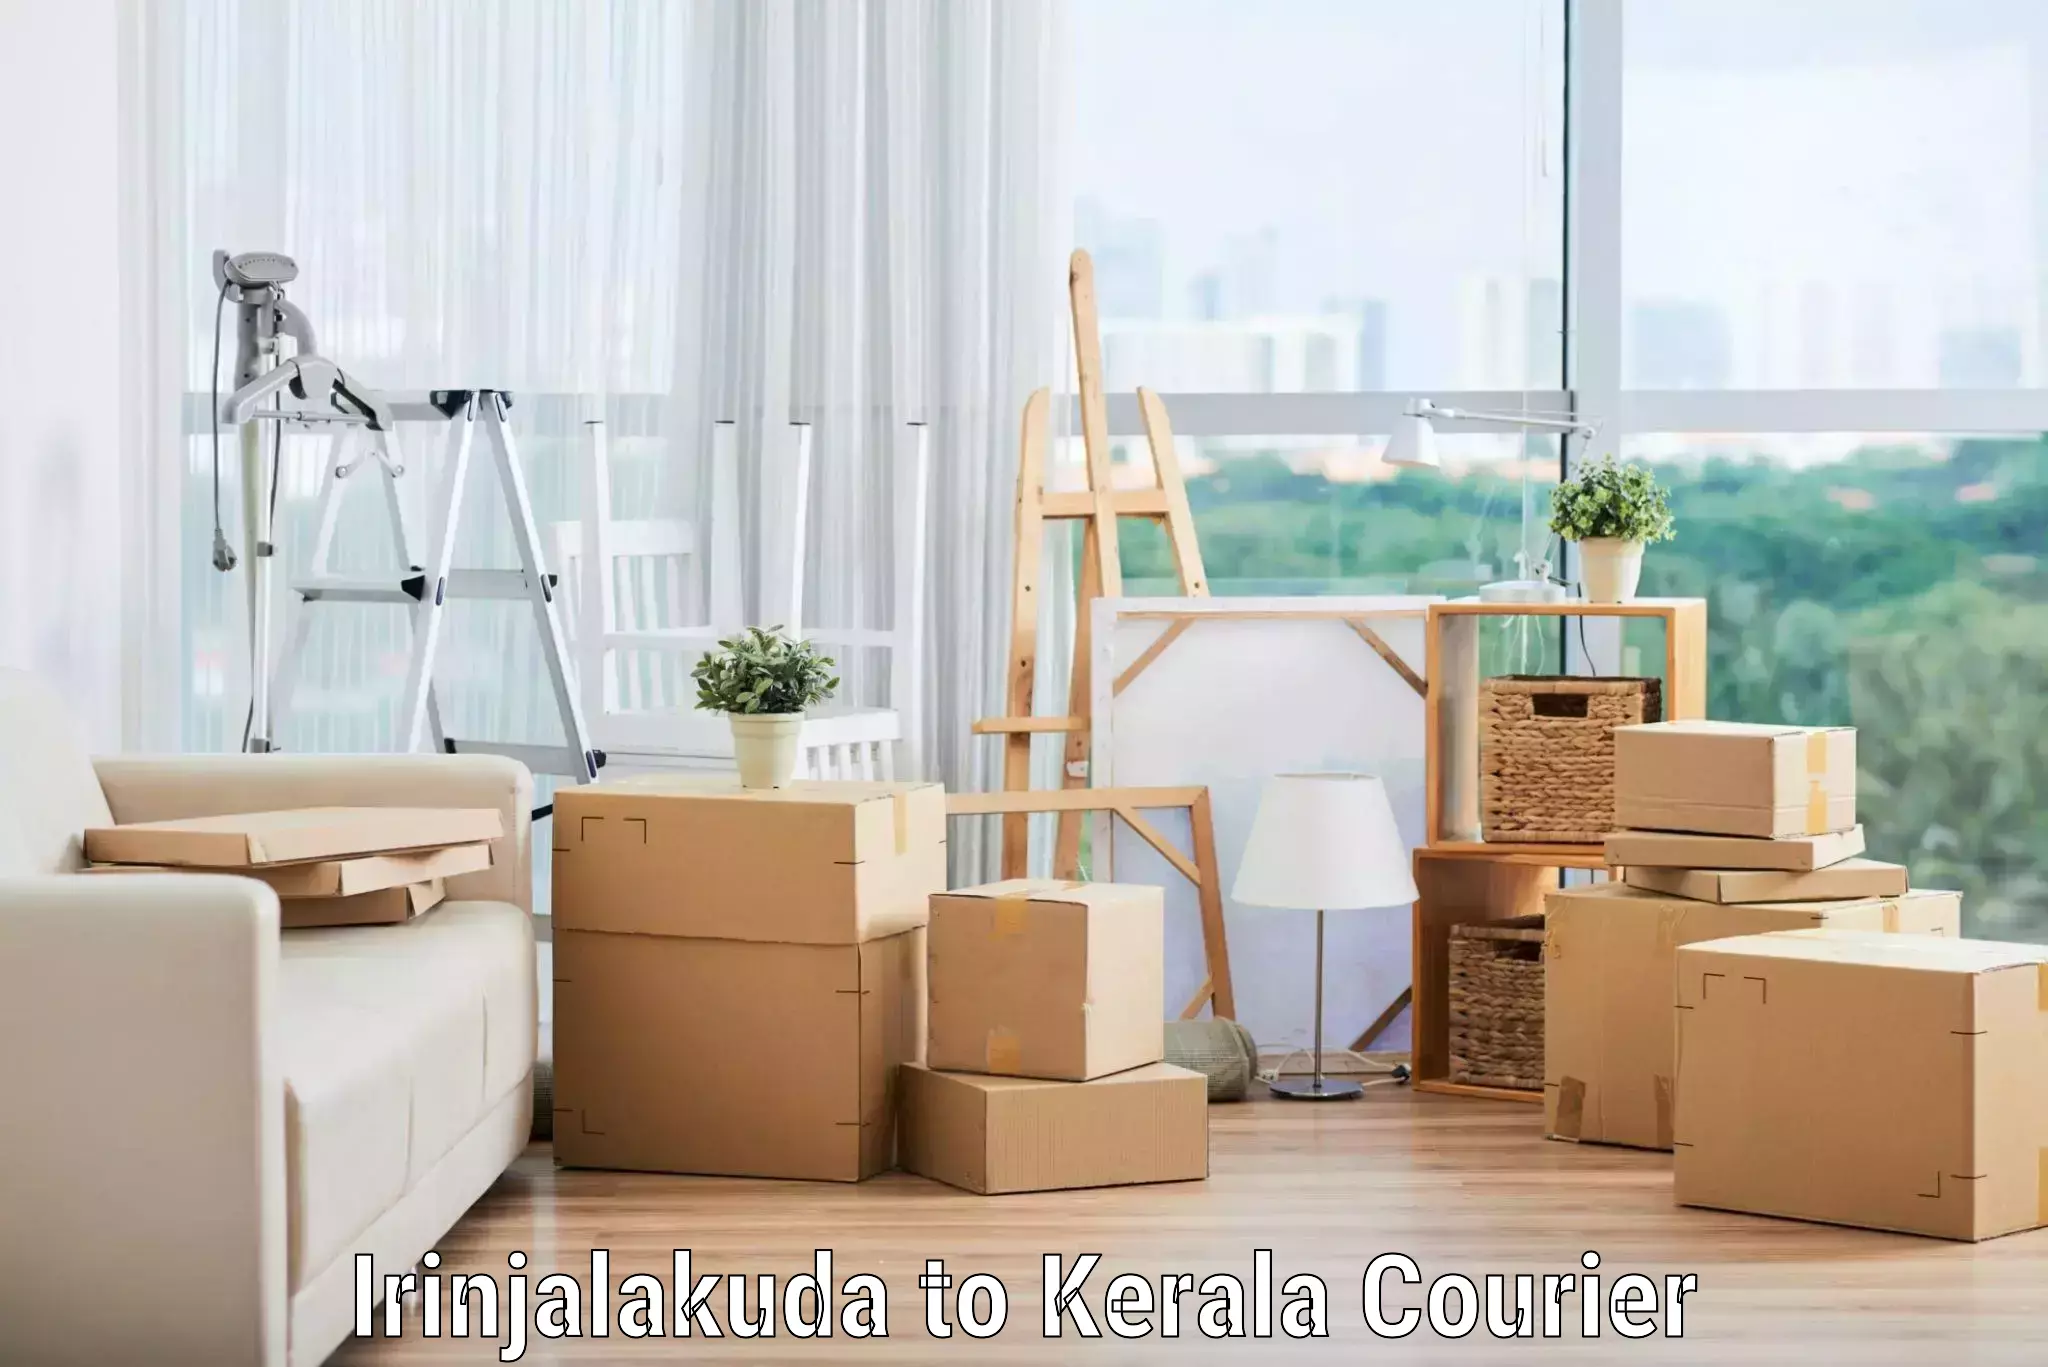 Residential moving experts Irinjalakuda to Kerala